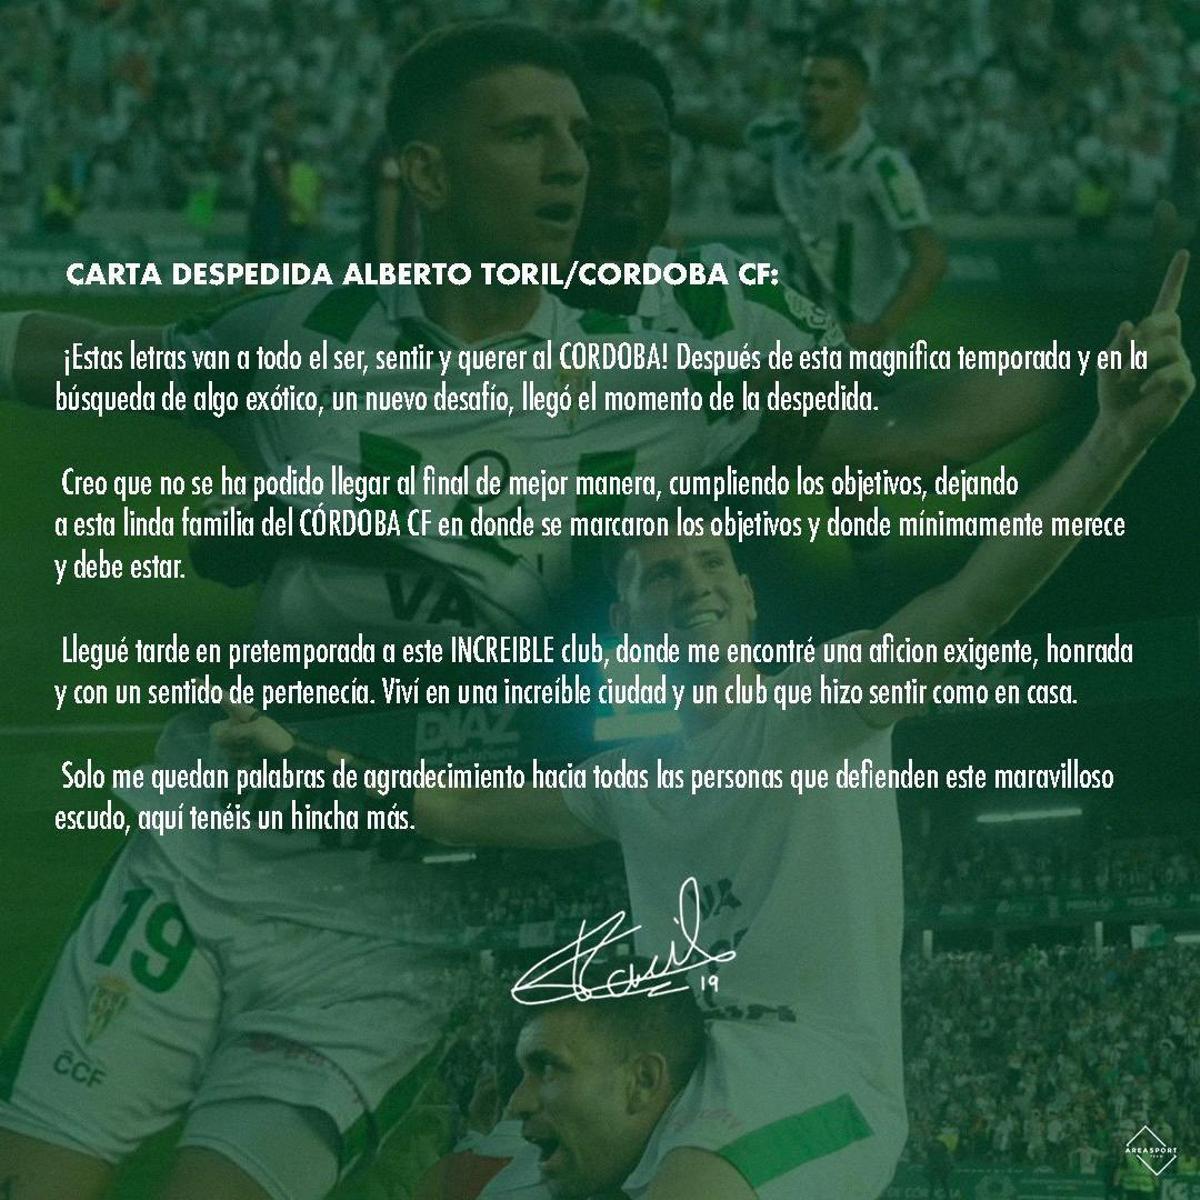 Carta de despedida del Córdoba CF de Alberto Toril.